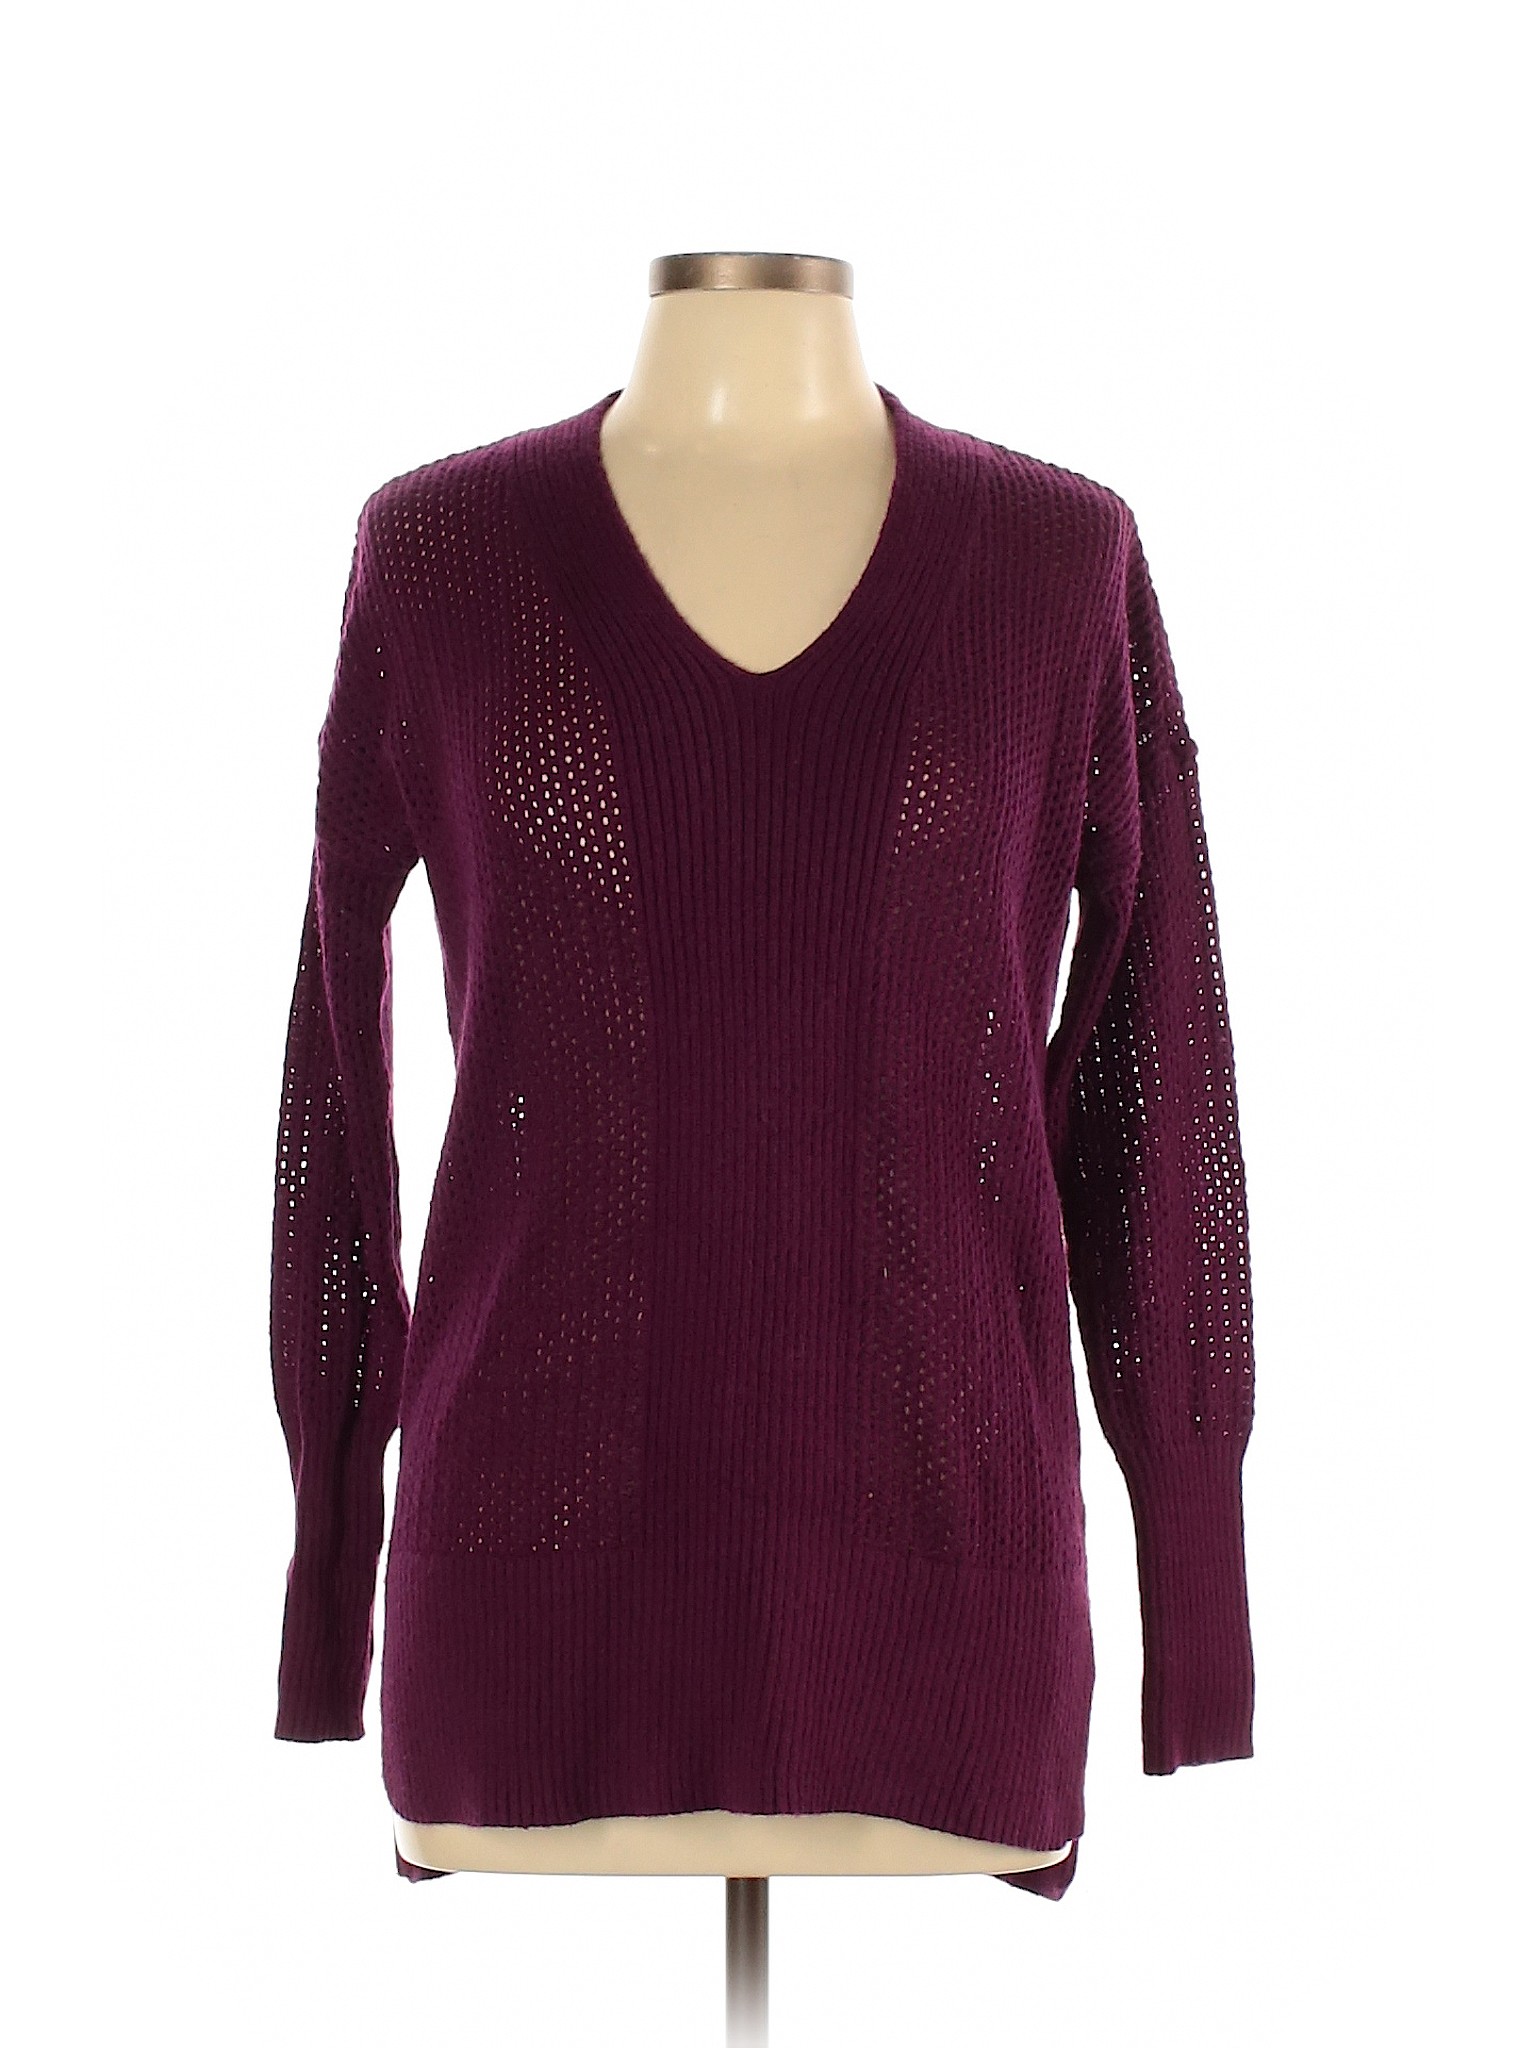 Stylus Women Purple Pullover Sweater M | eBay